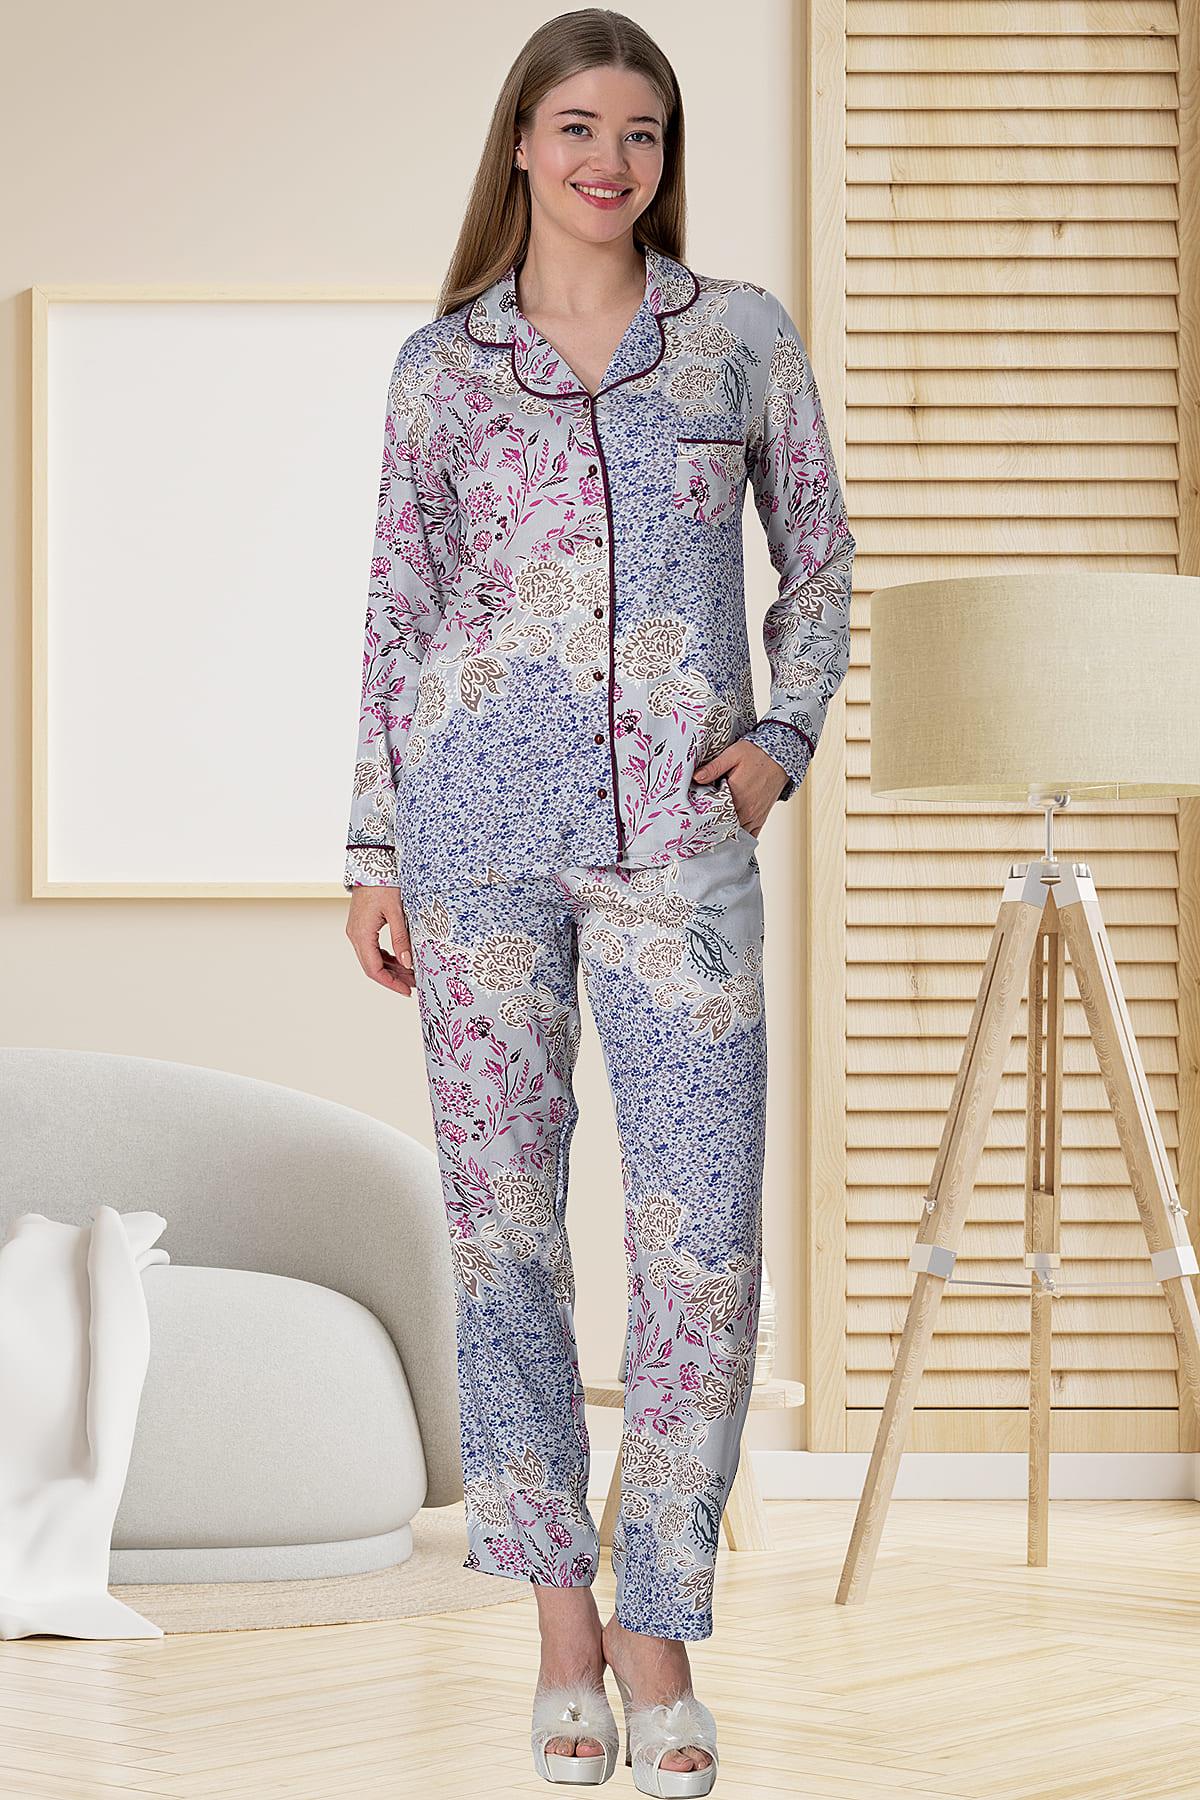 Patterned Maternity & Nursing Pajamas Grey - 5809